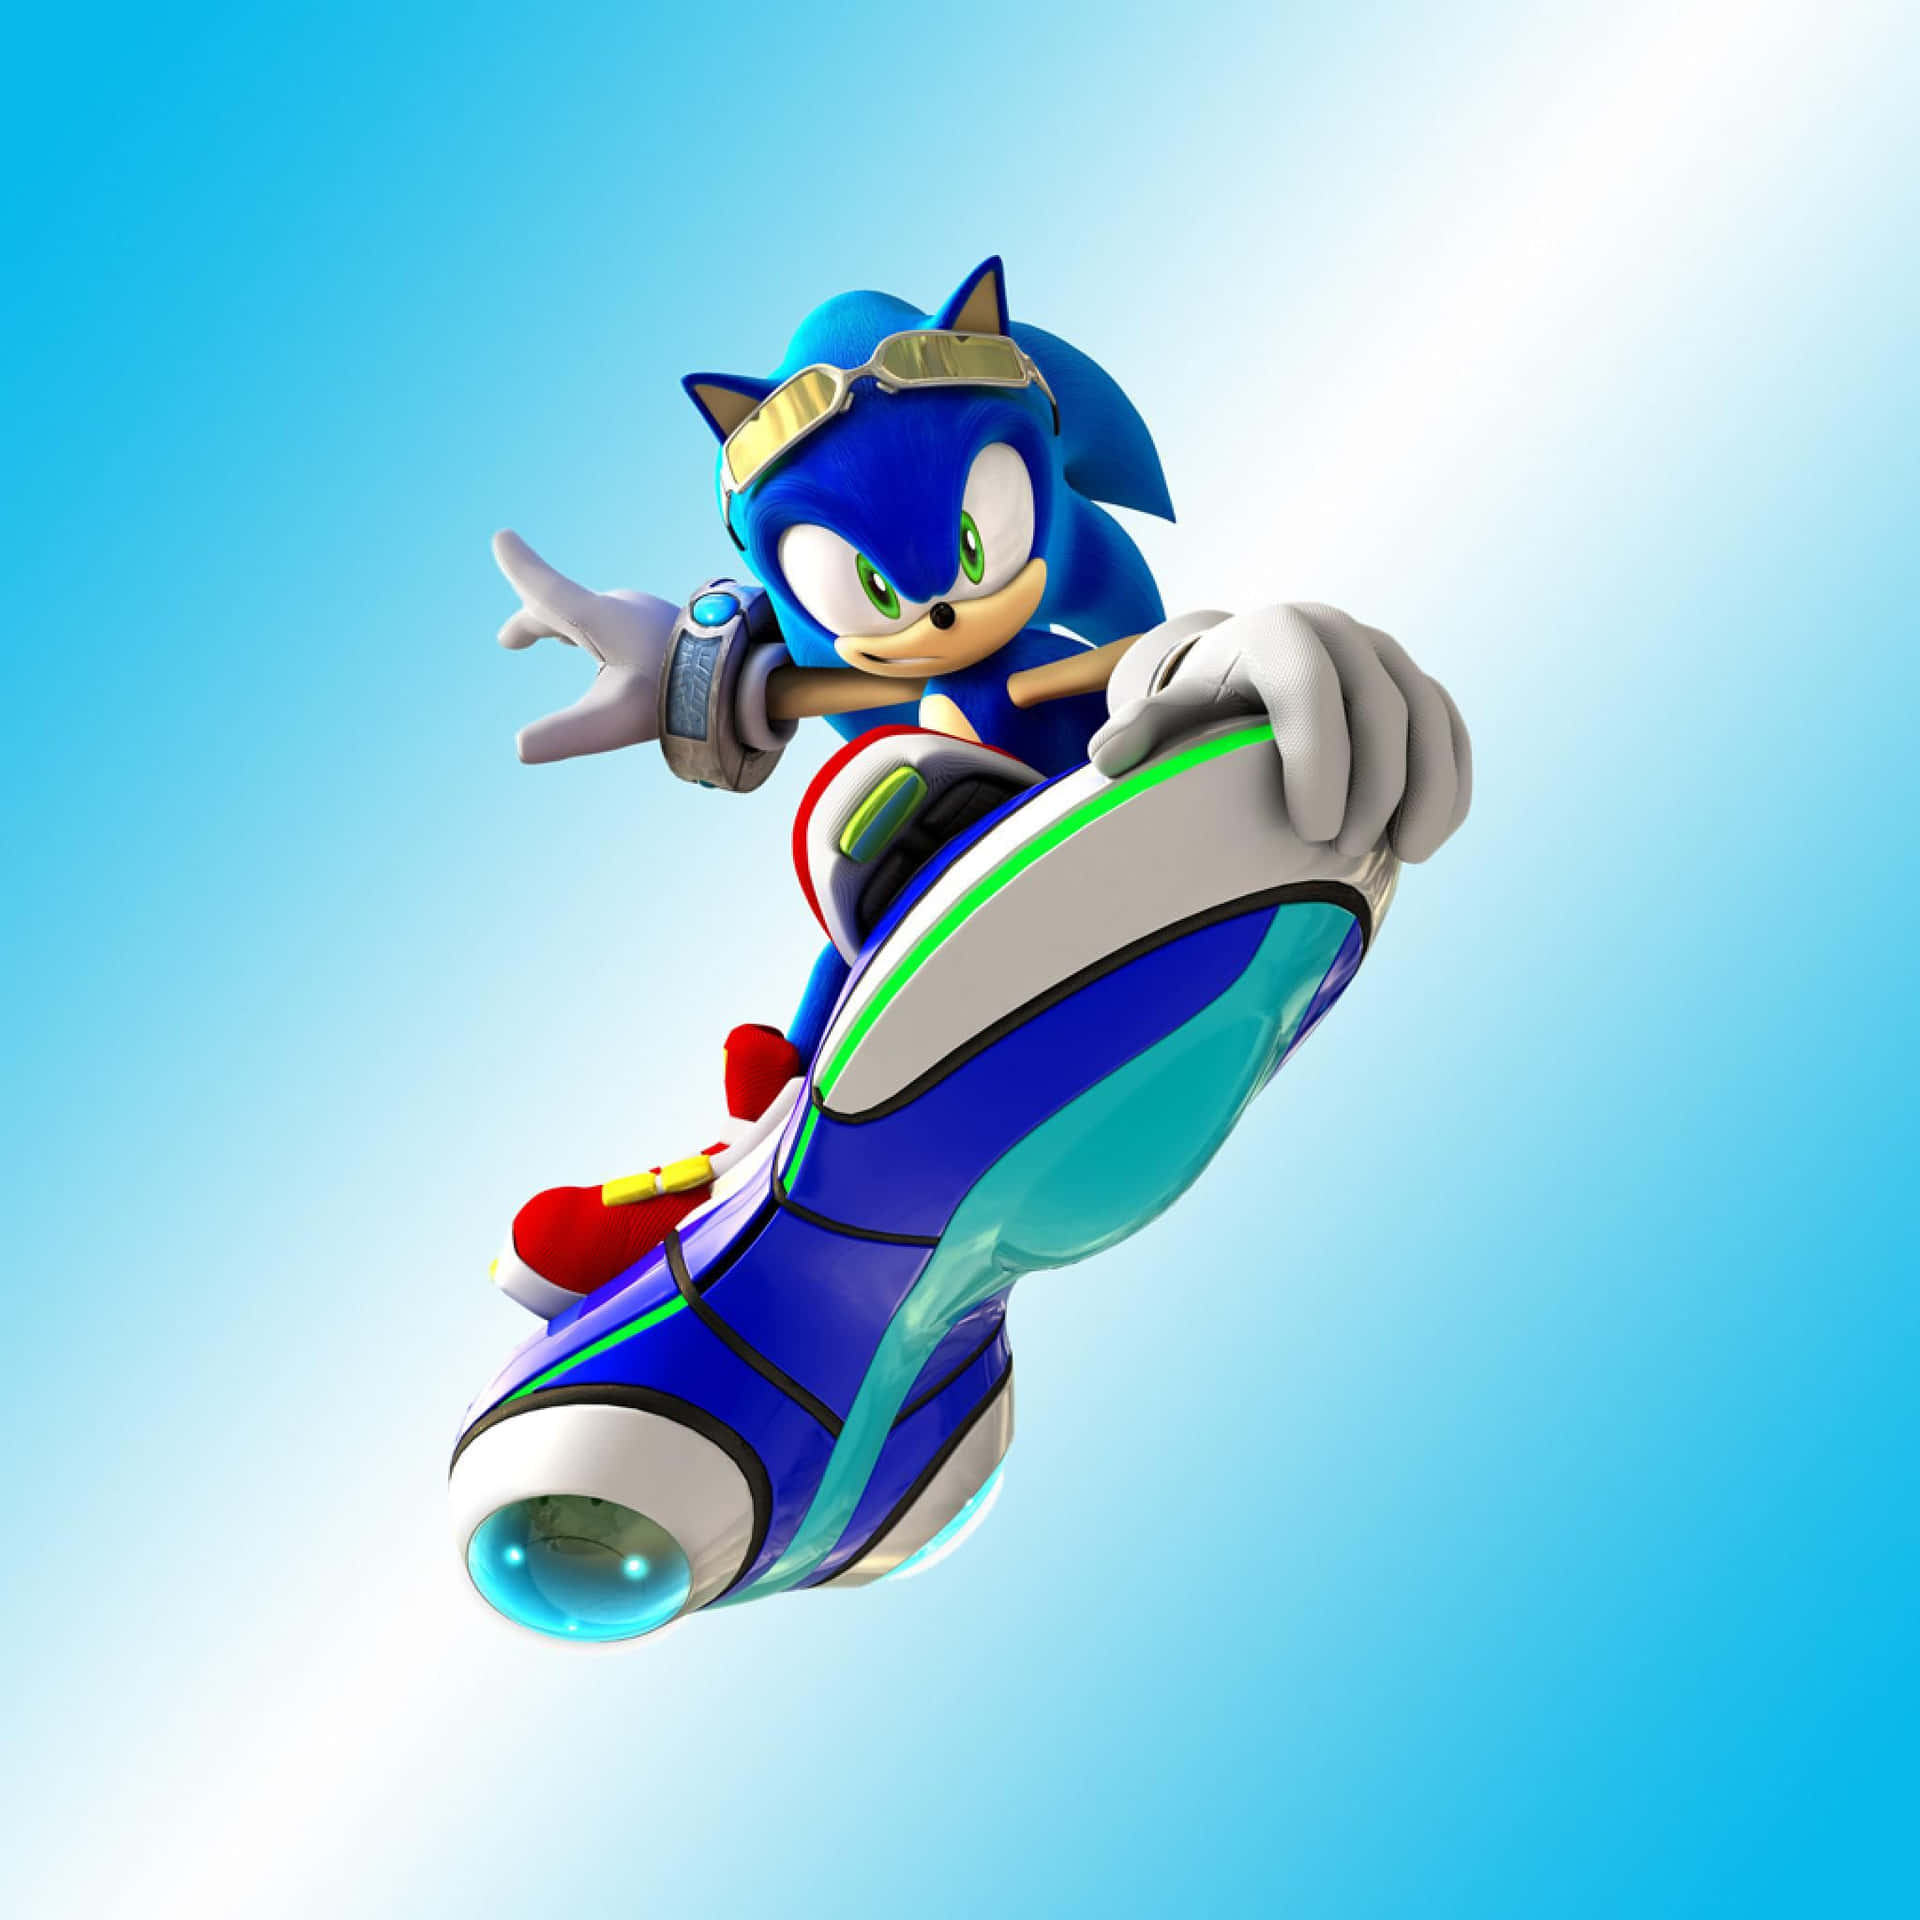 Sonicthe Hedgehog Saltando En El Aire. Fondo de pantalla